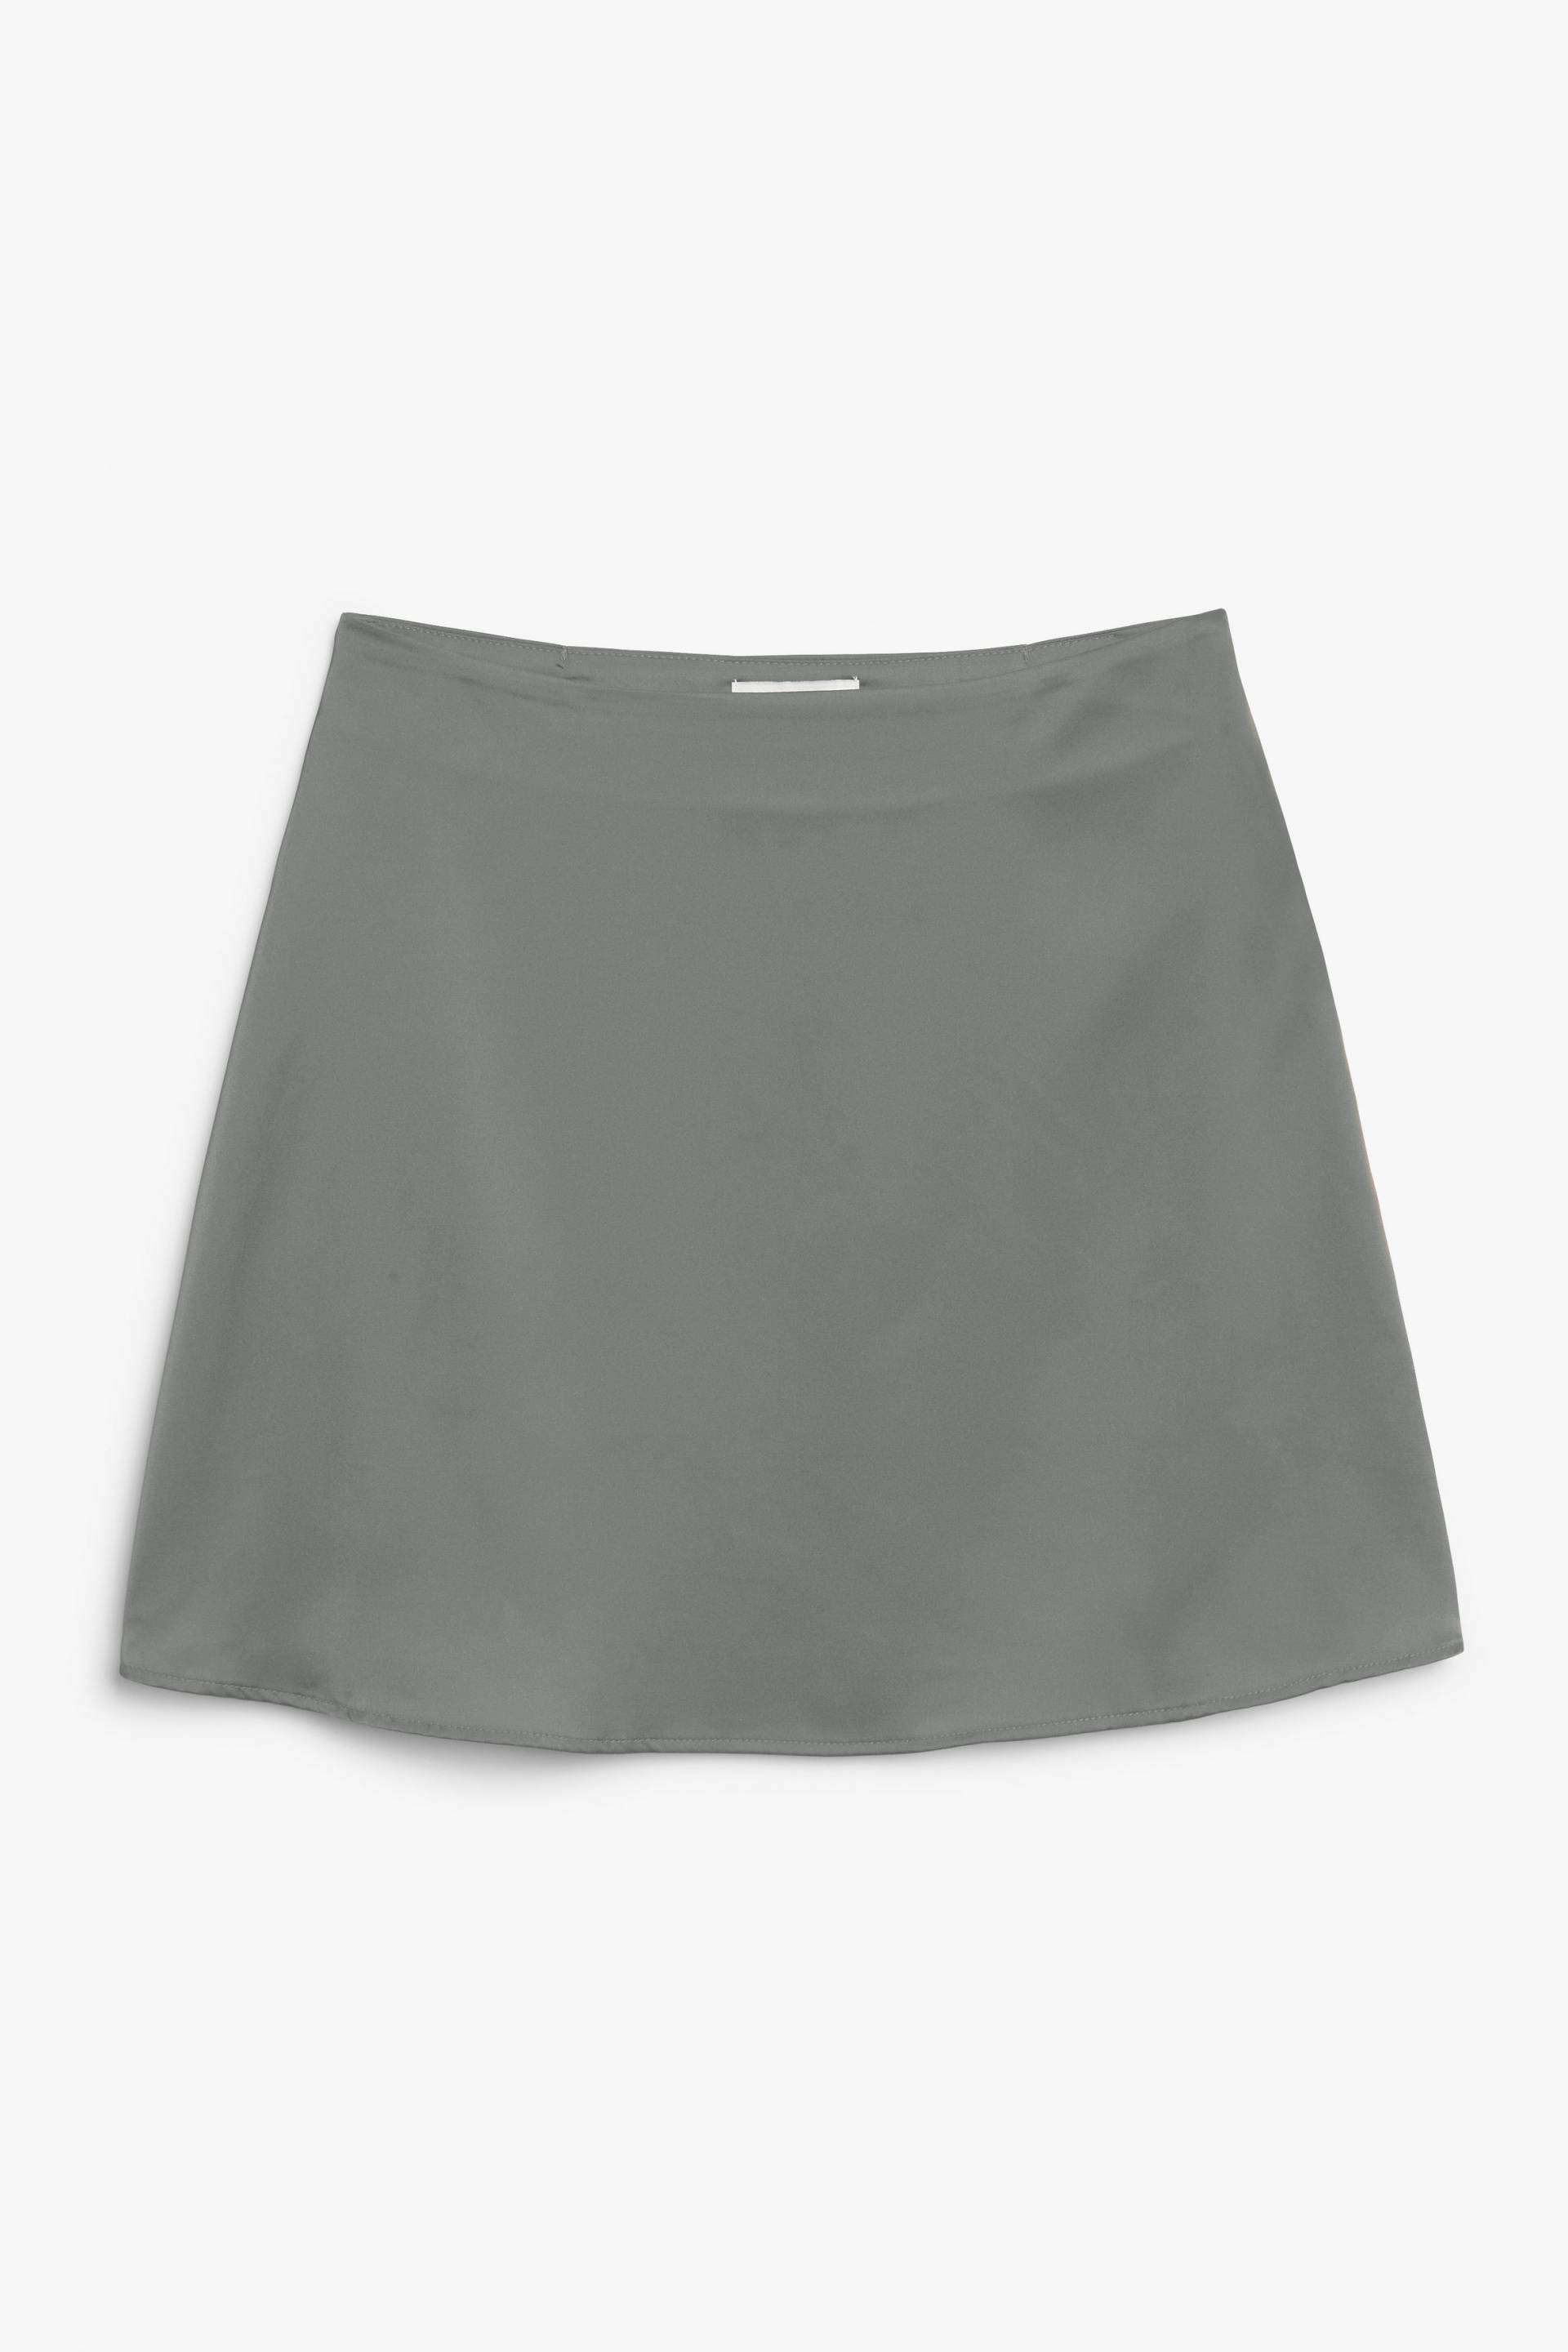 Monki Grauer Minirock aus Satin Grau, Röcke in Größe 48. Farbe: Grey von Monki